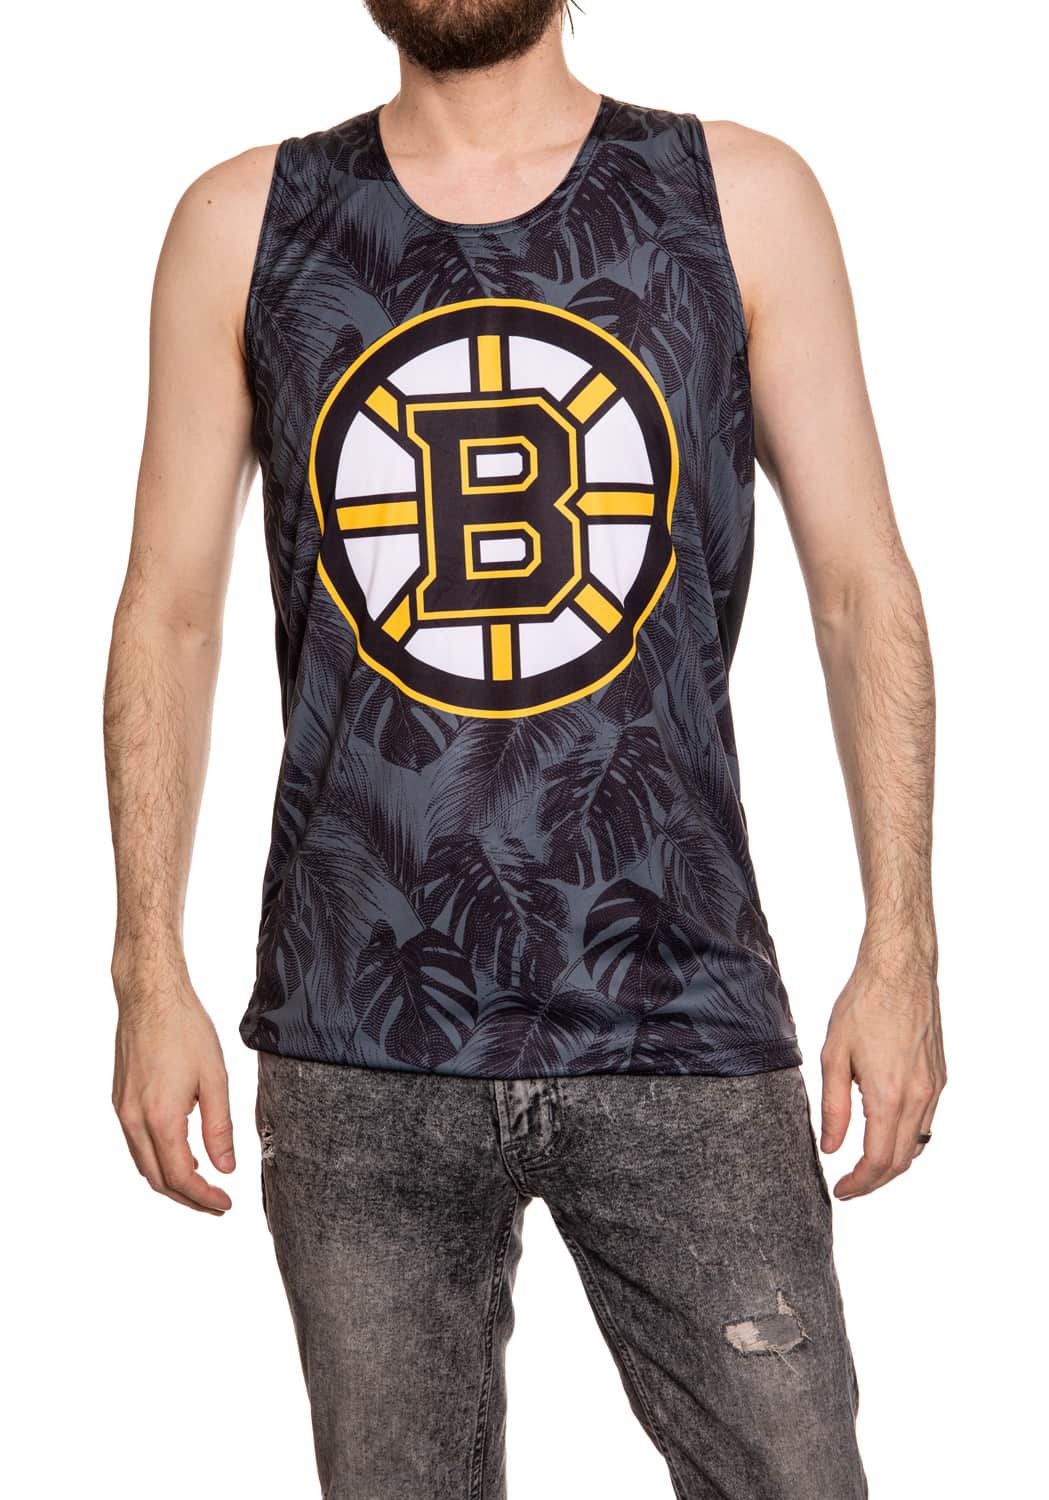 Boston Bruins "Palm" Tank Top